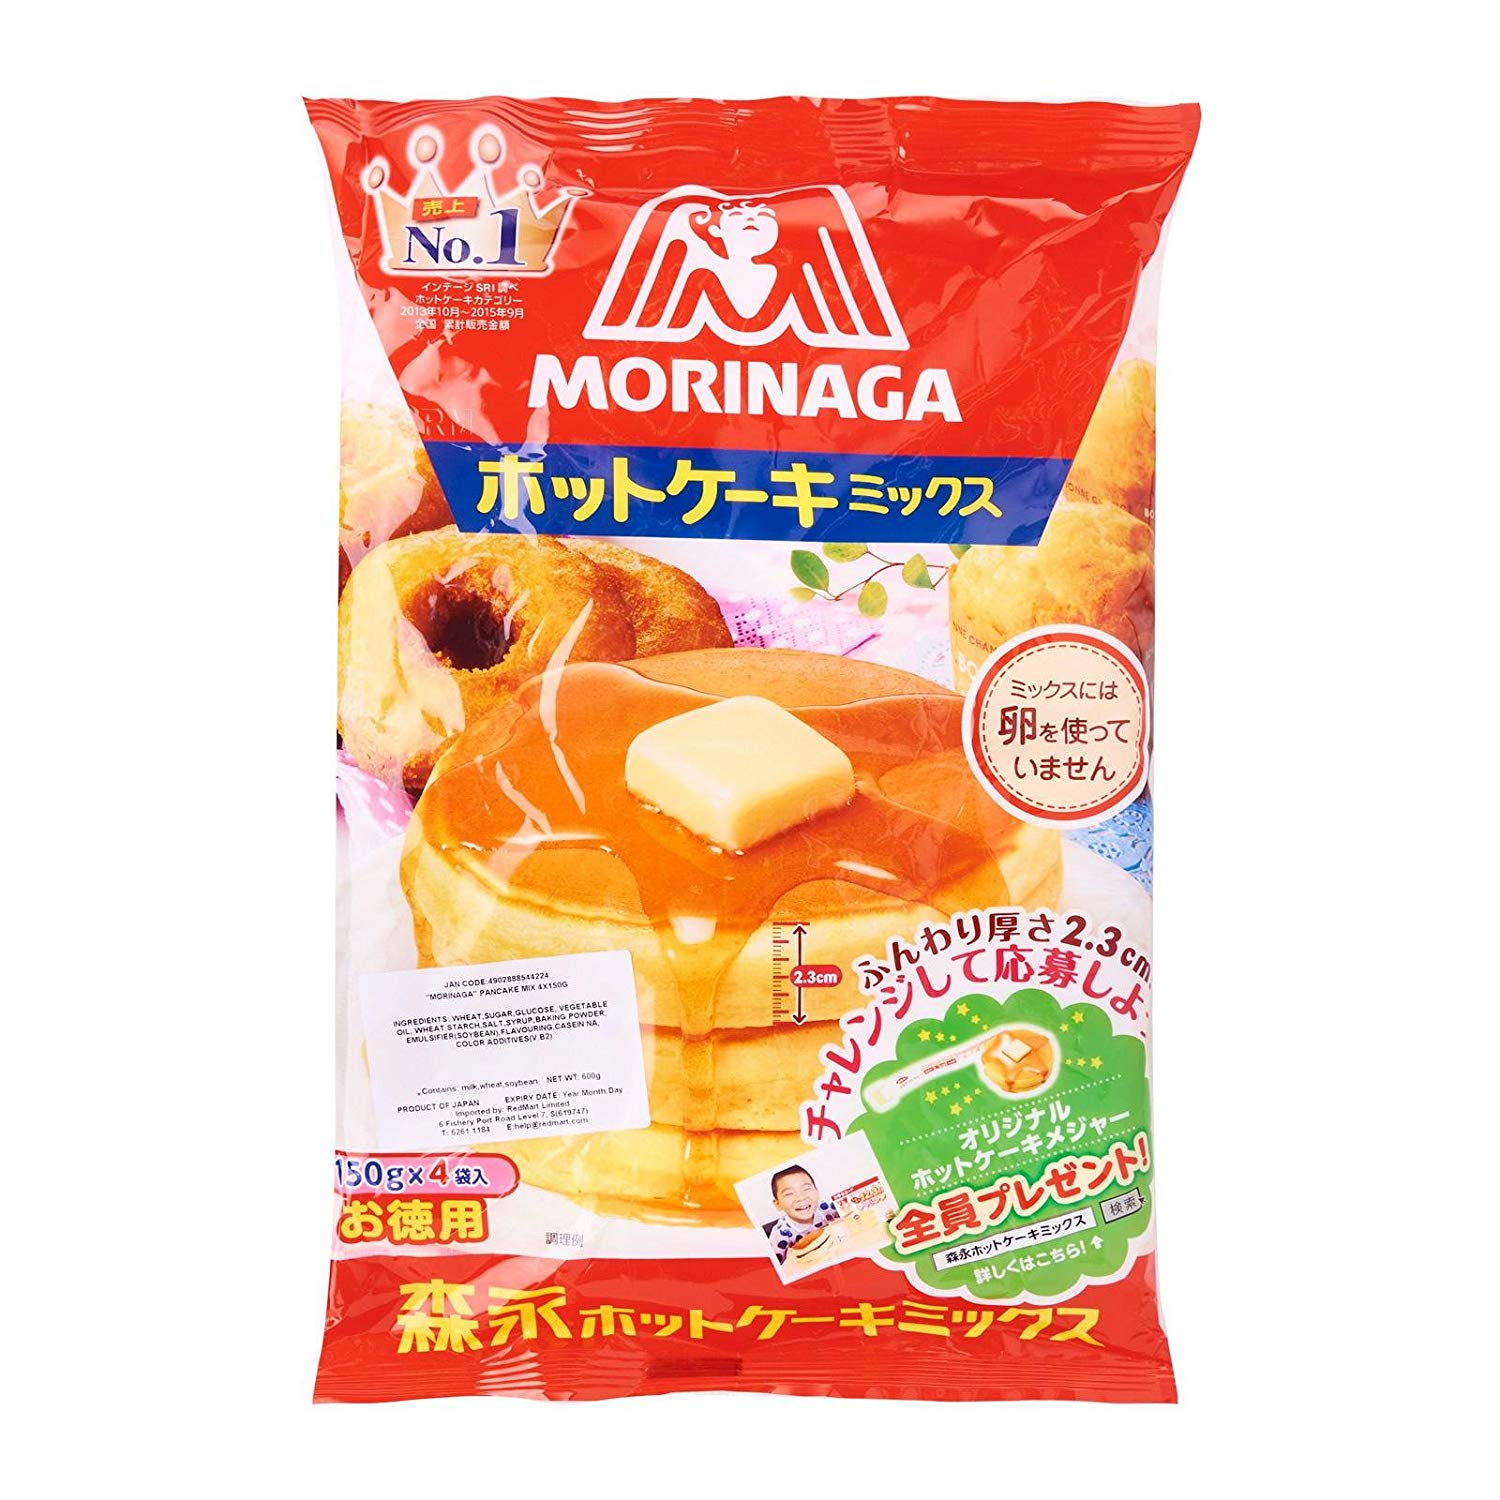 Hot! No.1 in Japan Morinaga pancake mix แป้ง